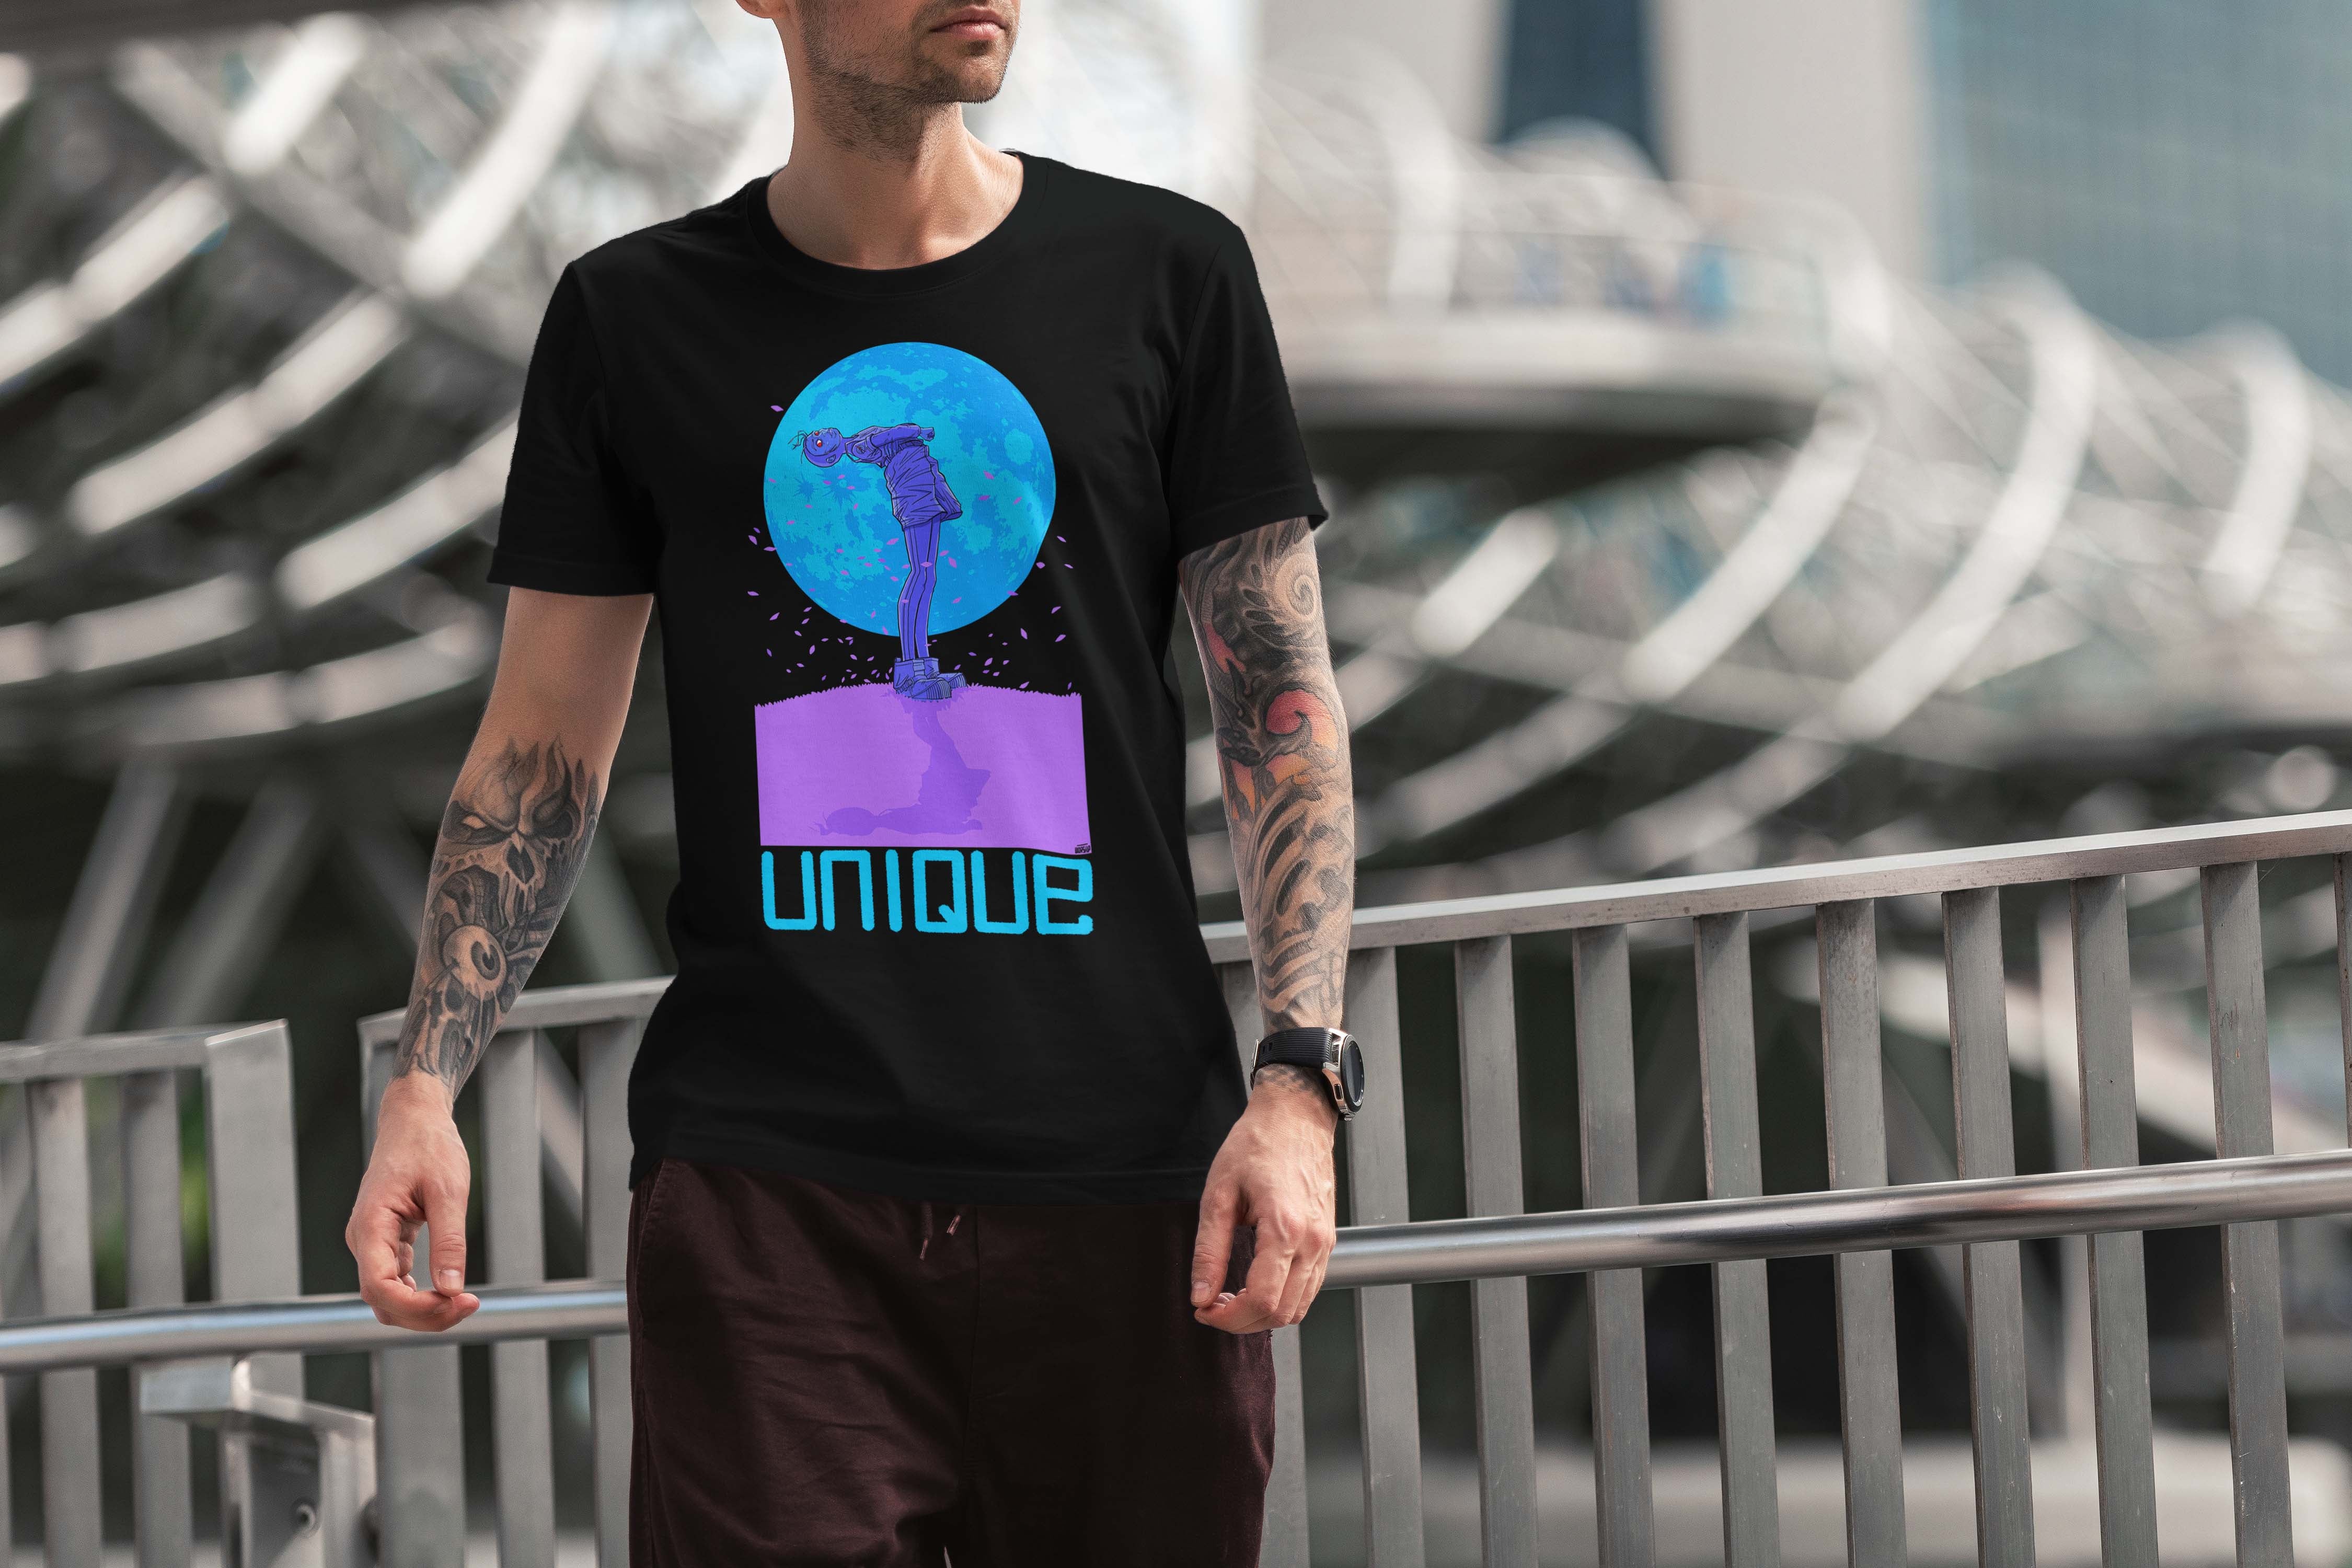 Unique 'Moon Child' Dark T-Shirt Selection